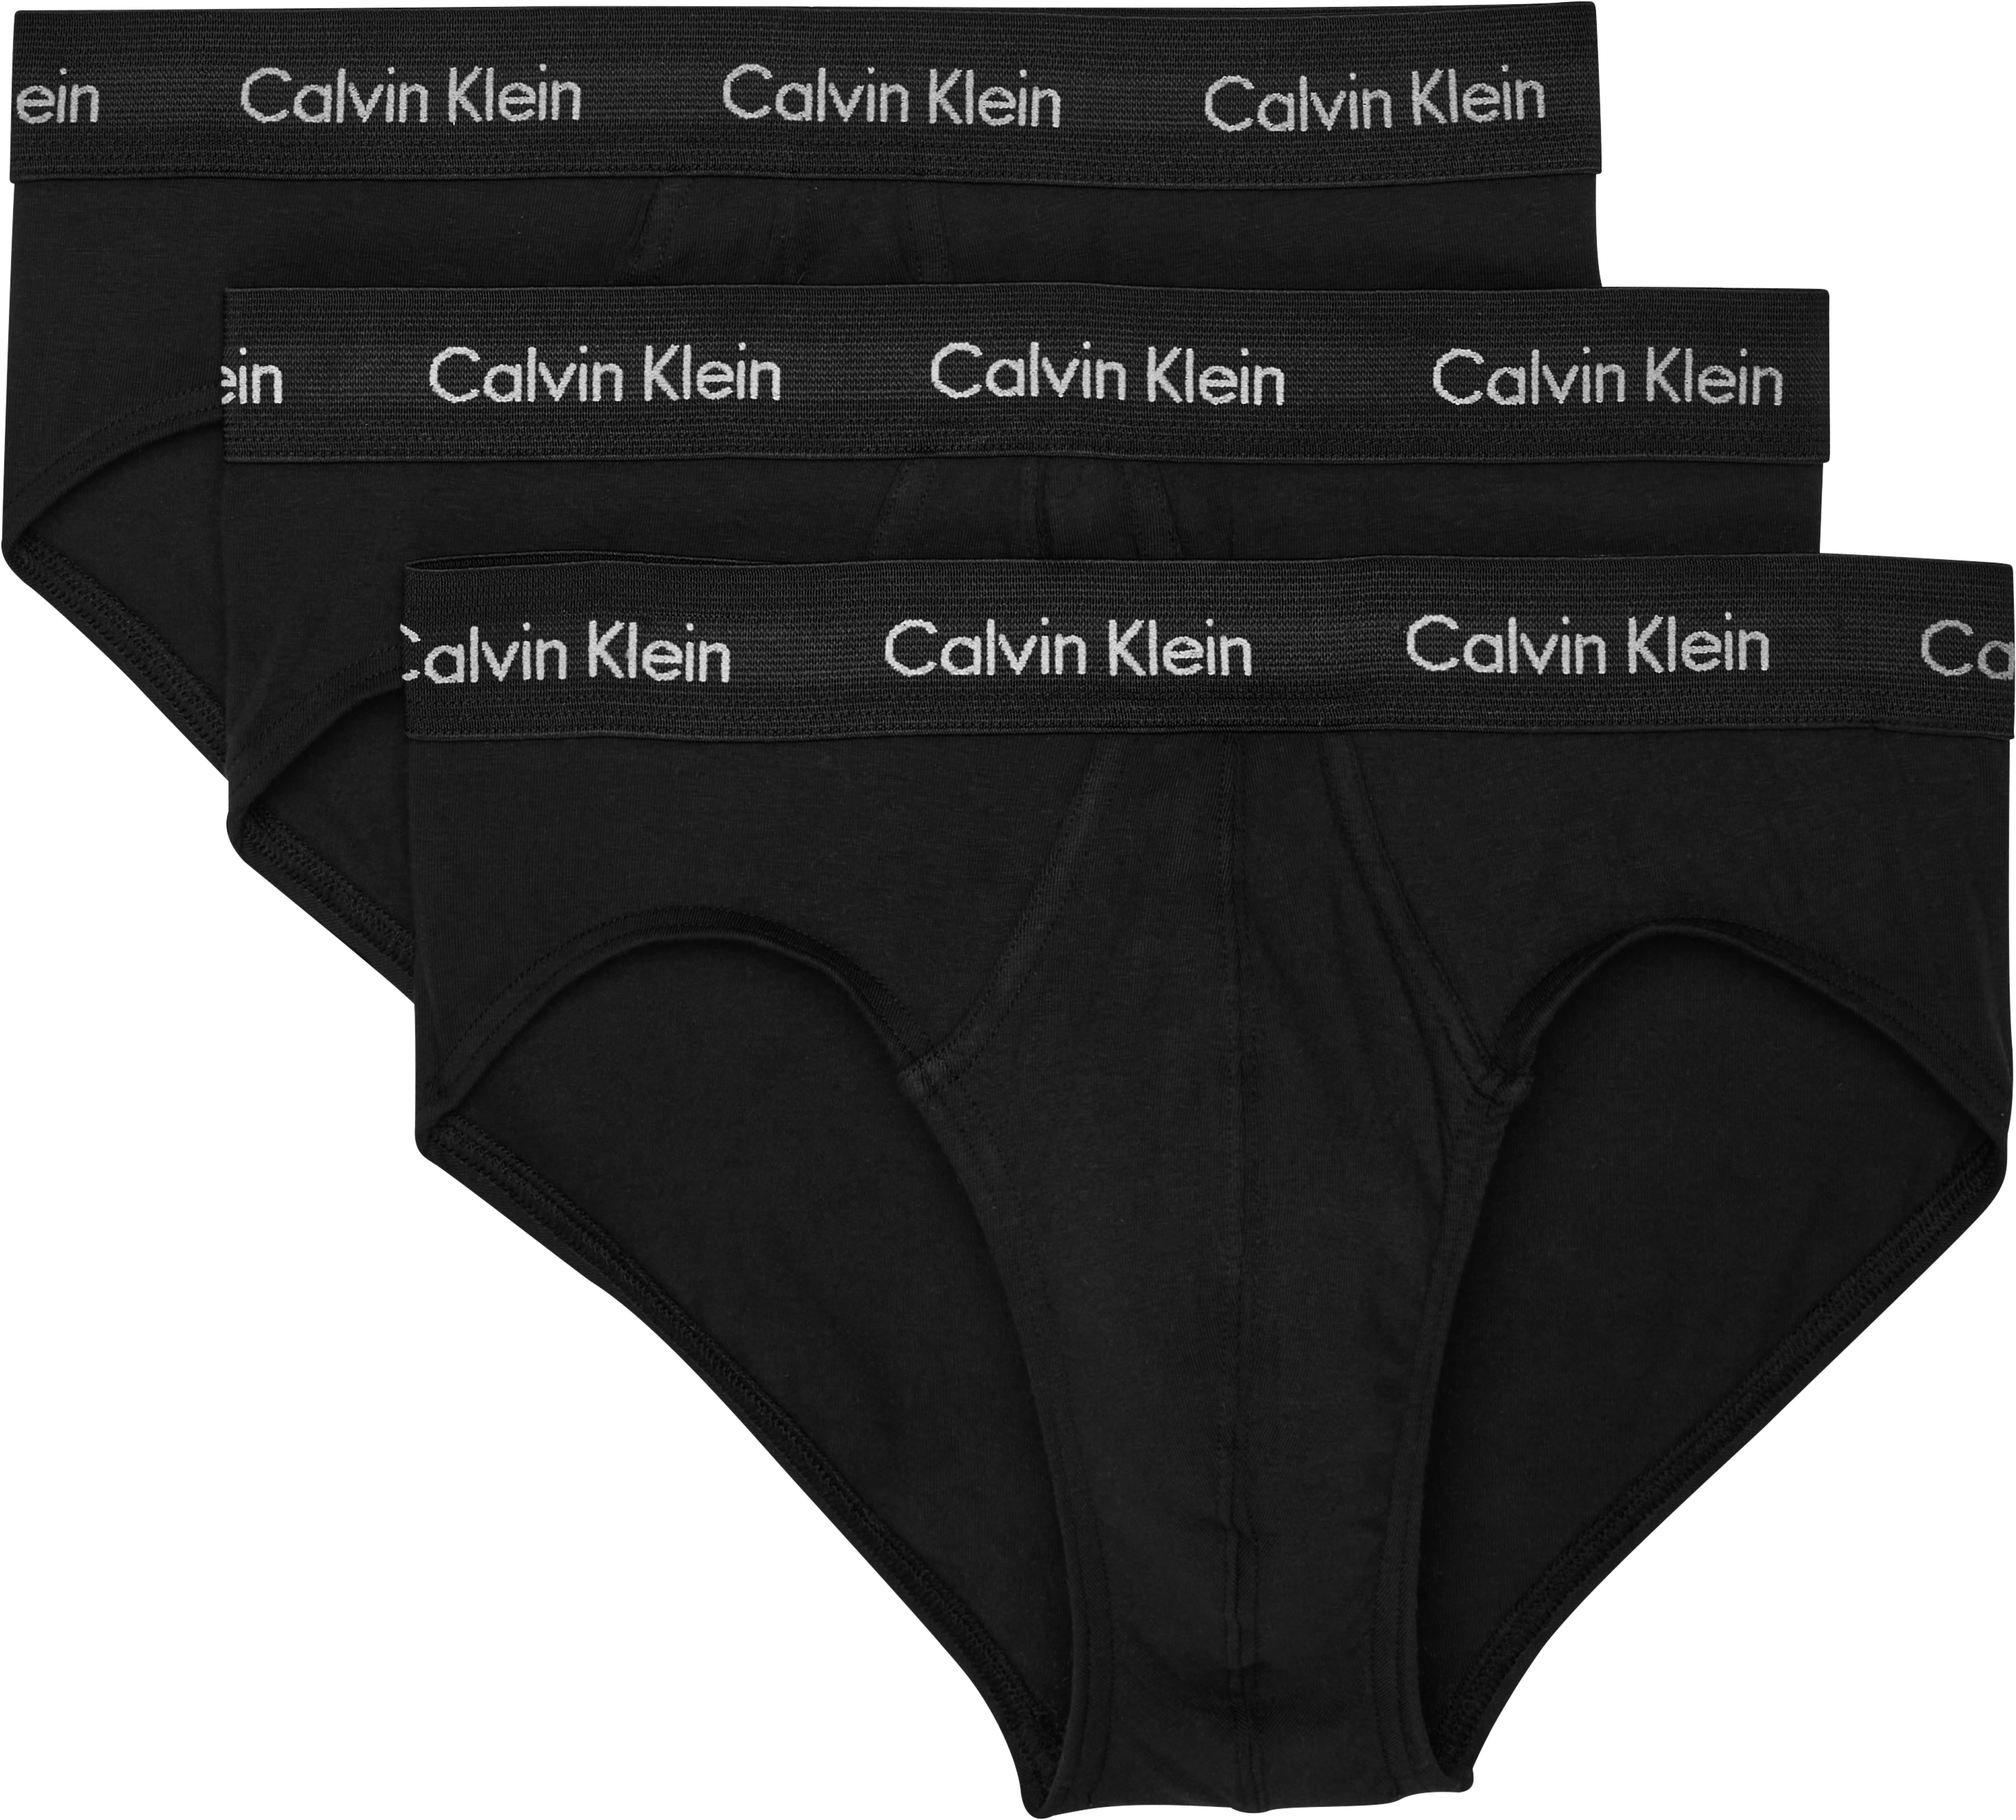 CR7 Men's Cotton Blend Comfort Waistband Trunks